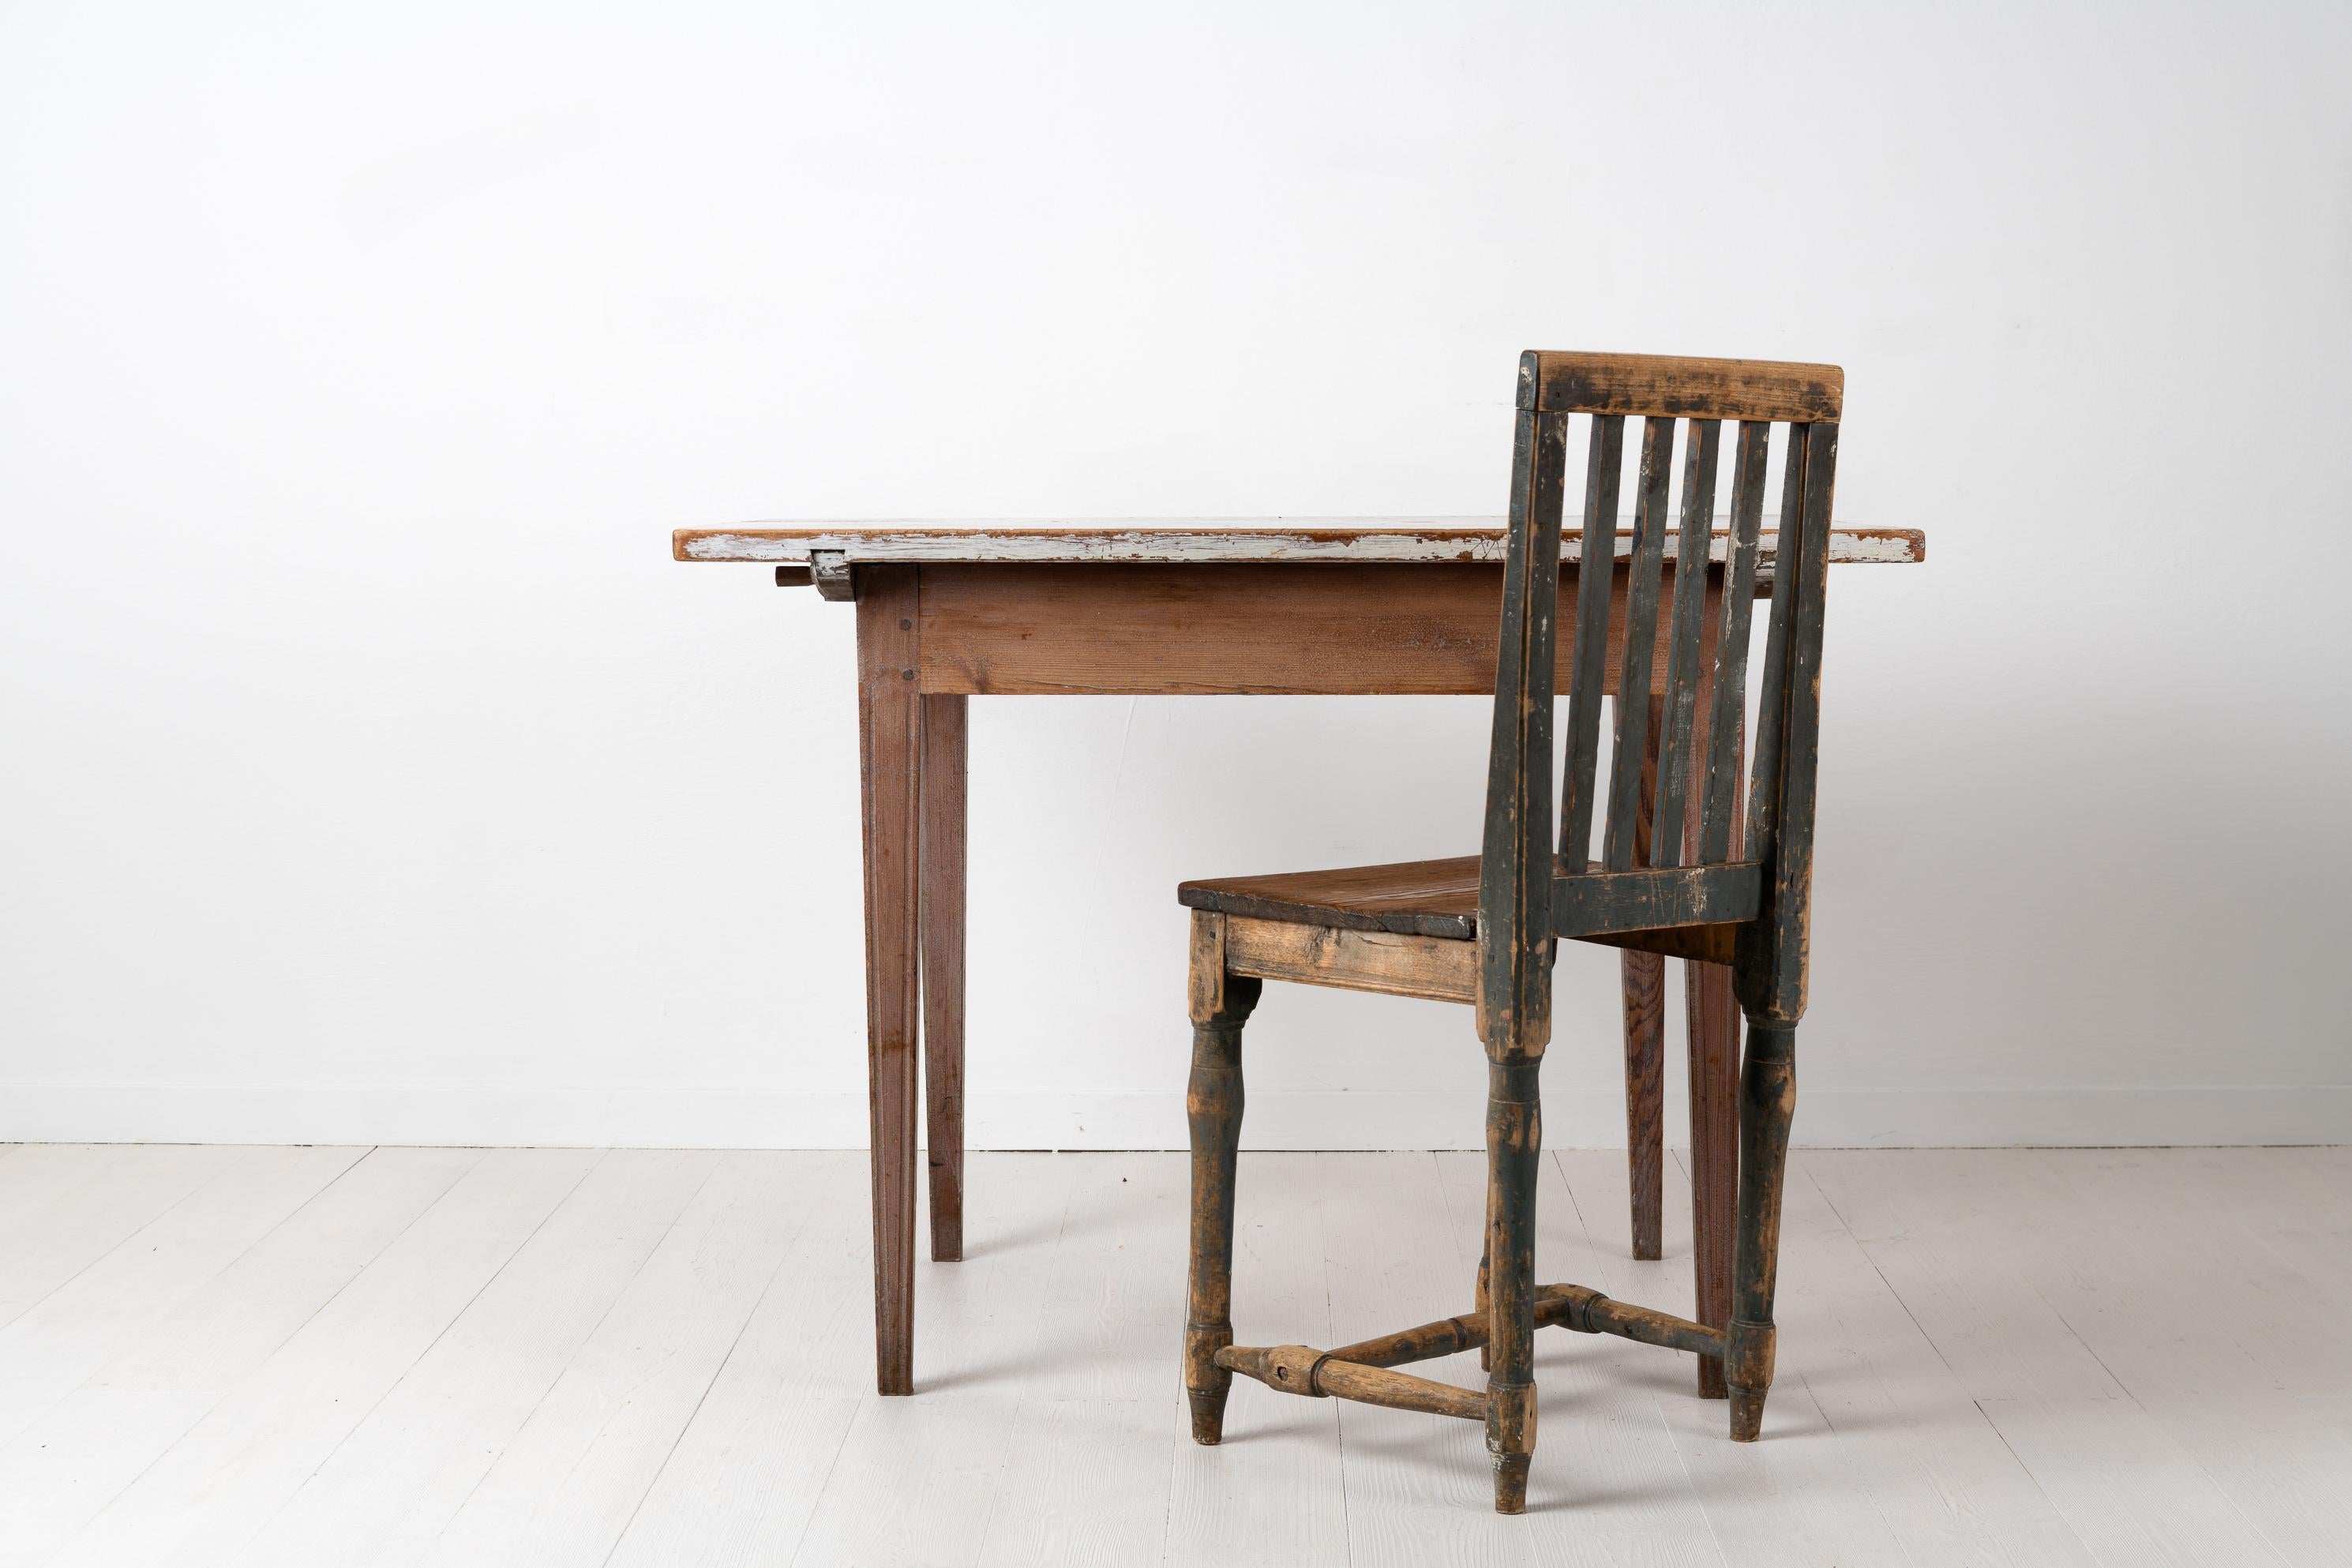 Gustavianischer Tisch aus Nordschweden in unangetastetem Originalzustand. Der Tisch stammt aus der Zeit um 1780-1790 mit dünnen Farbspuren am Gestell und einer weiß lackierten Tischplatte. Gerade, konische Beine mit Kannelierung. Der Tisch ist in